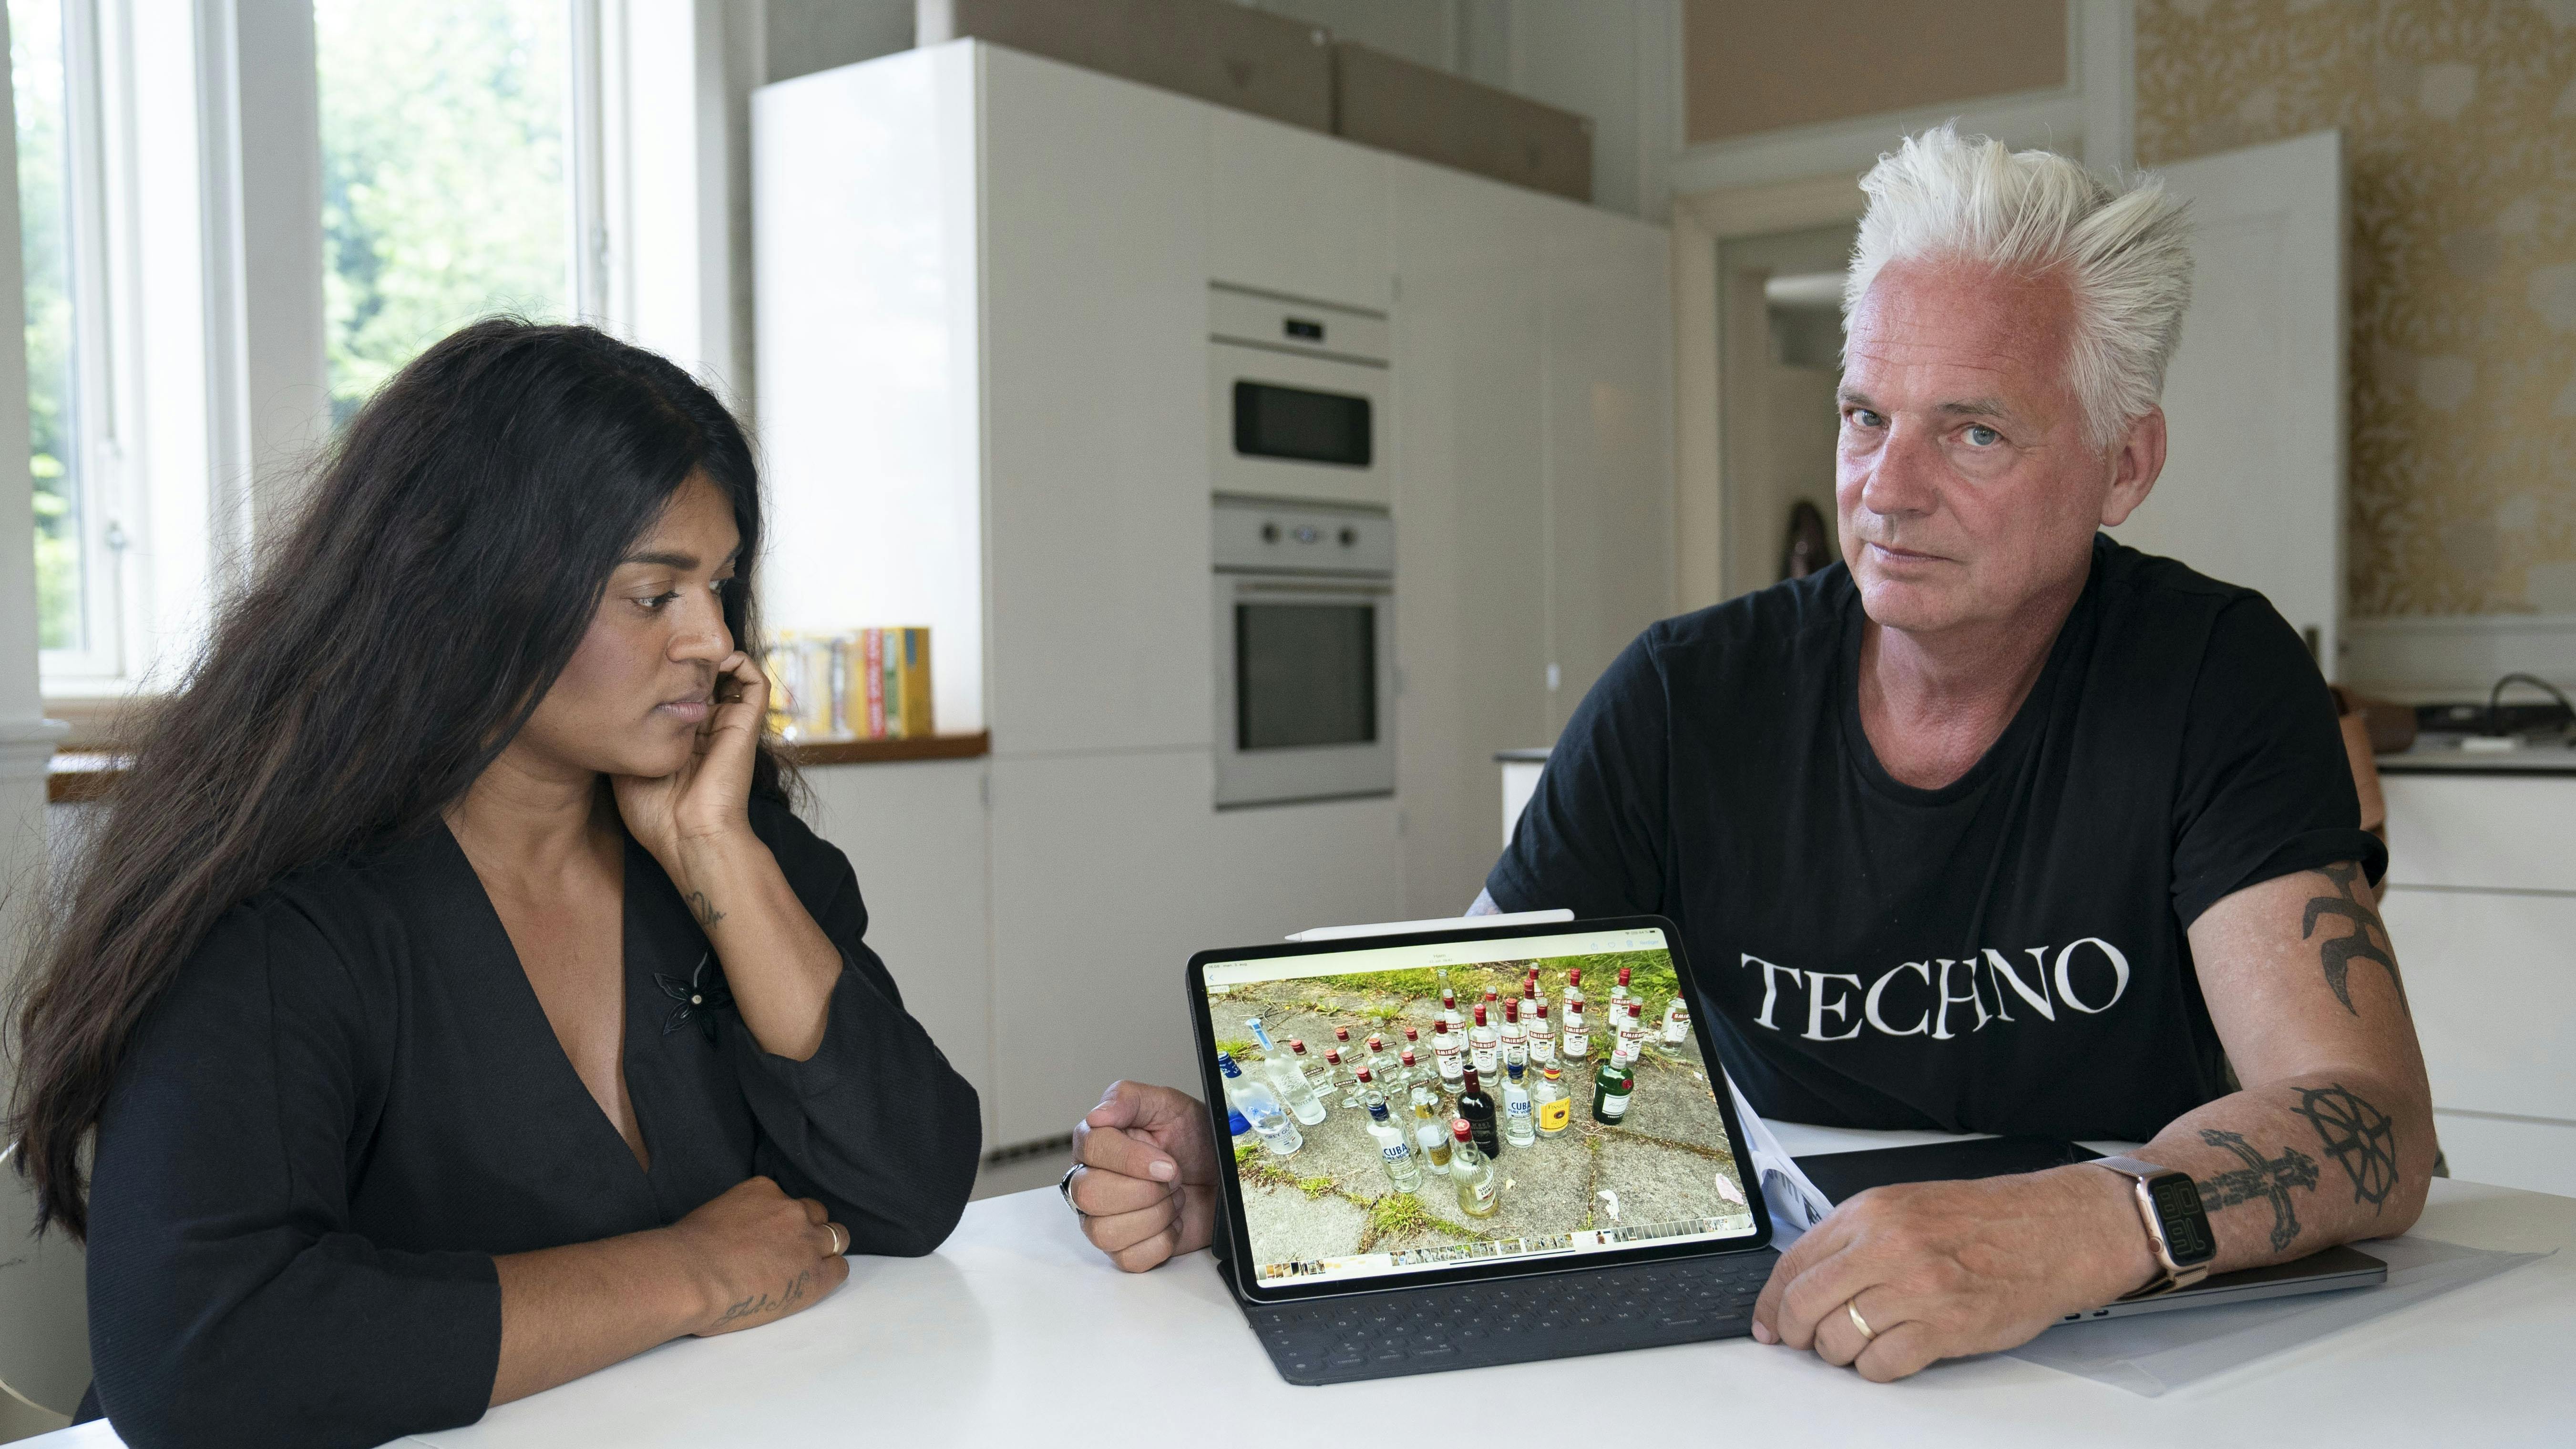 Thomas og Karina lejede ud via Airbnb: Vores hjem blev raseret 